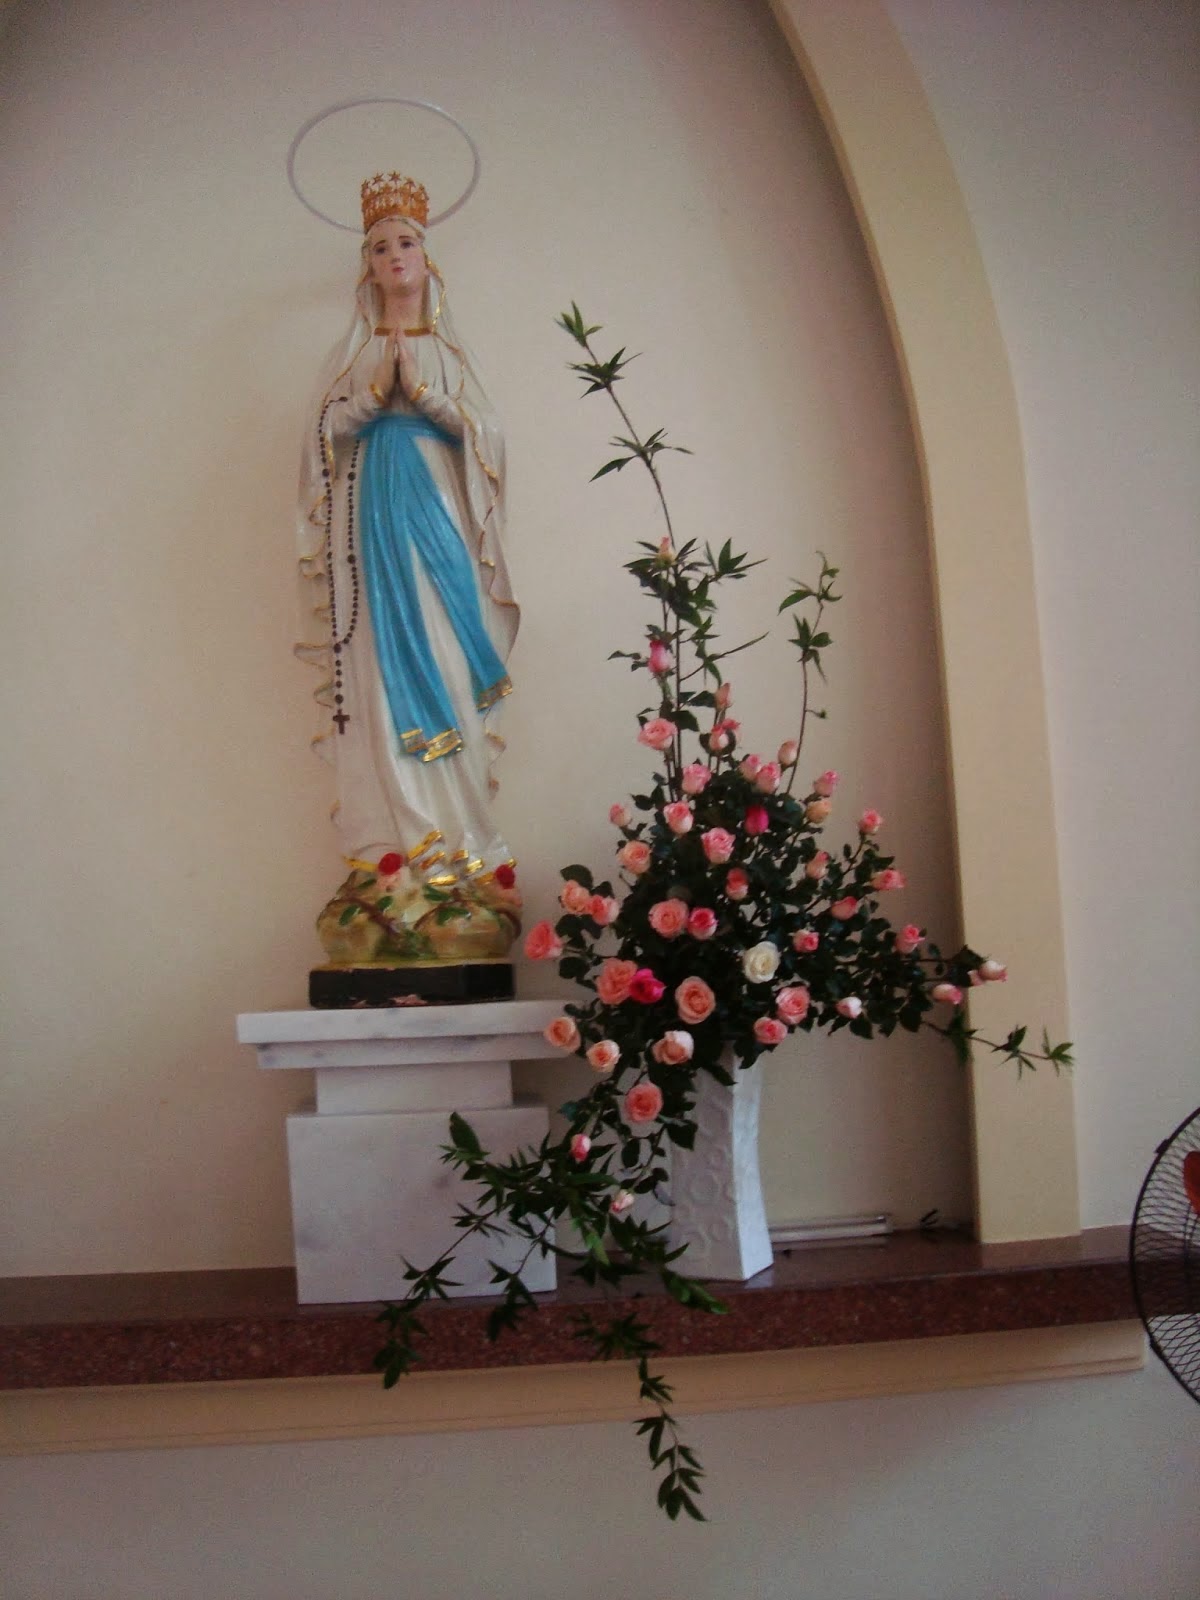 Một số mẫu cắm hoa trên bàn thờ Đức Mẹ, Nghệ thuật cắm hoa nhà thờ, Cắm hoa phụng vụ, cắm hoa nhà thờ đẹp, cắm hoa nghệ thuật, cắm hoa theo mùa phụng vụ